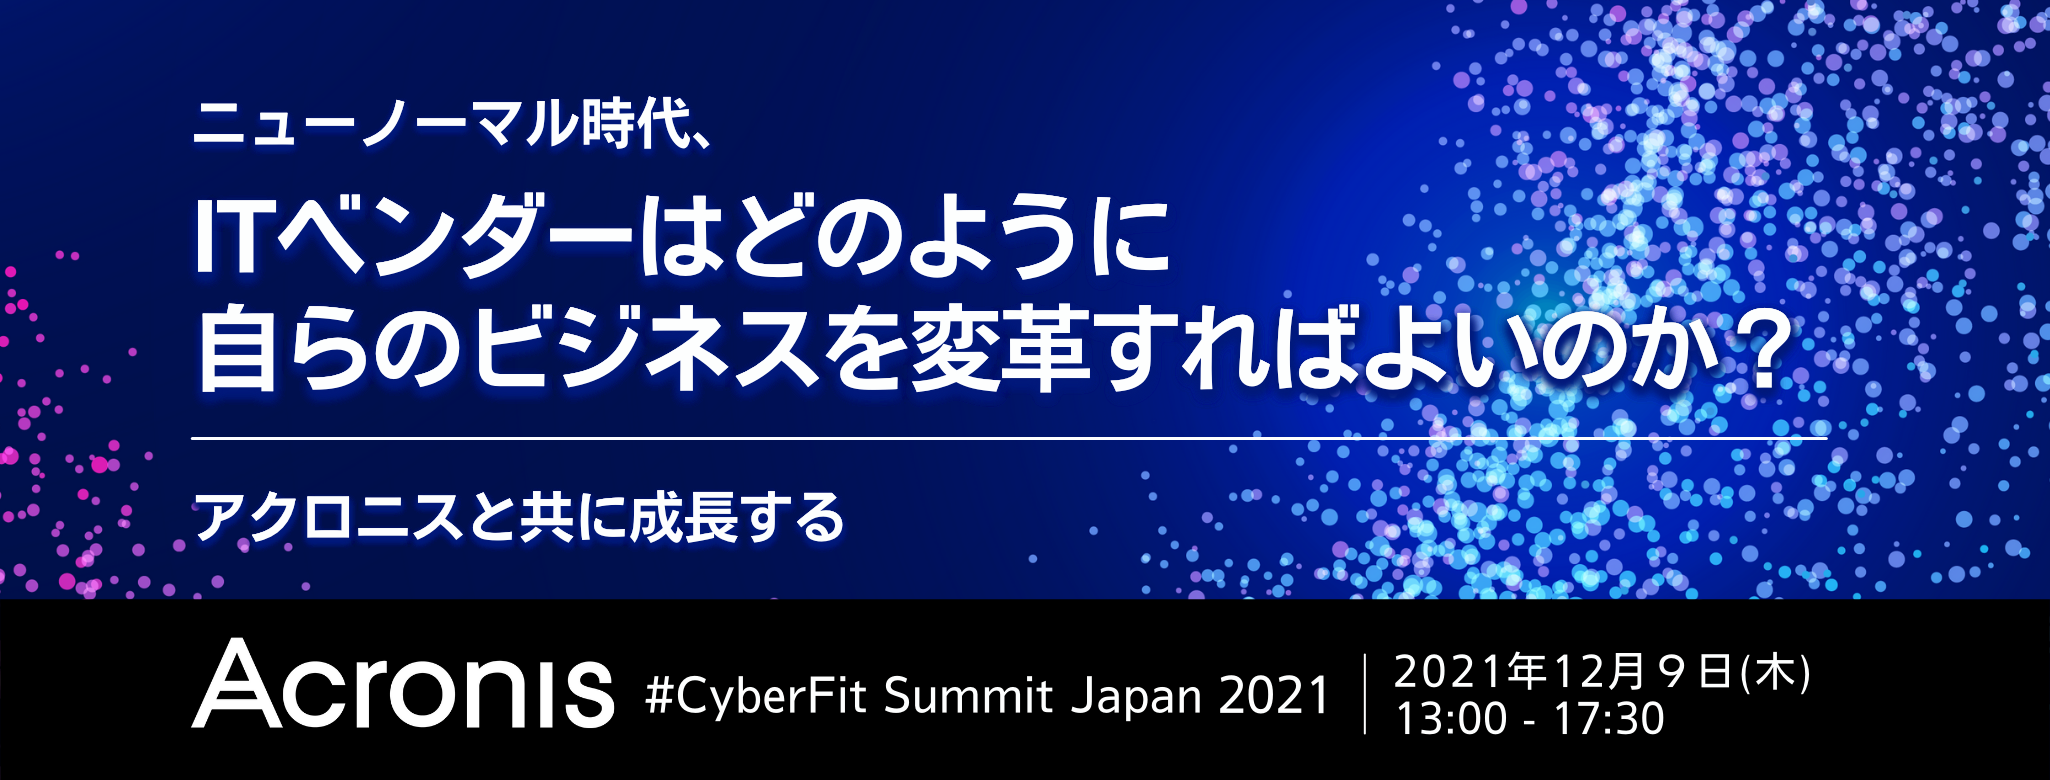  ニューノーマル時代、ITベンダーはどのように自らのビジネスを変革すればよいのか？ ～アクロニスと共に成長する「Acronis #CyberFit Summit Japan 2021」～